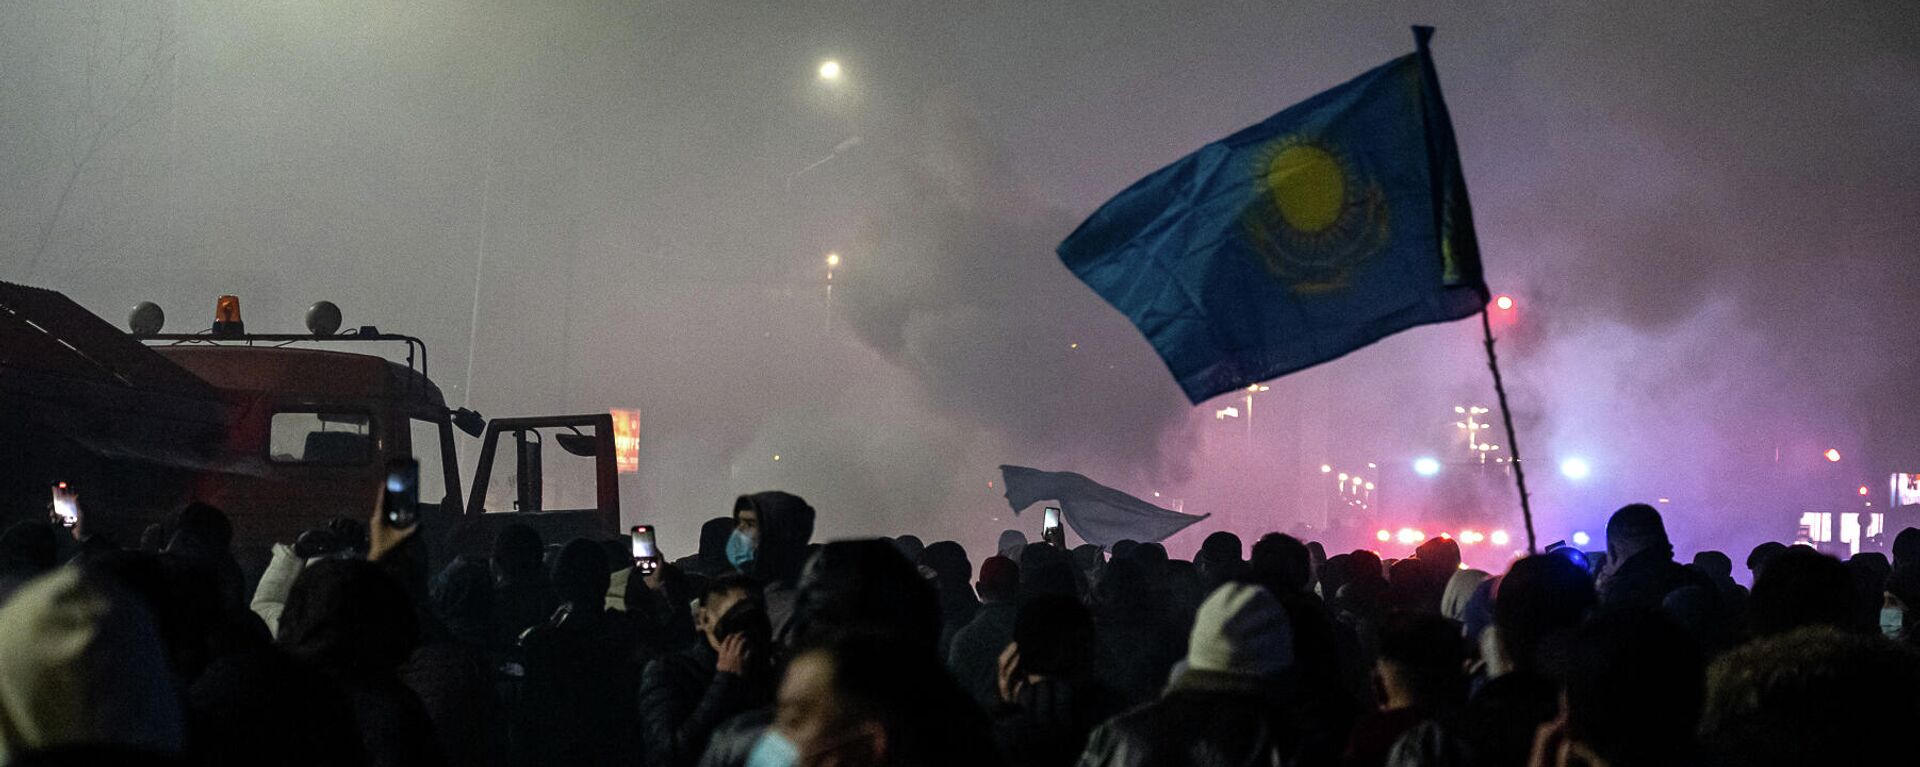 Протестующие на митинге в Алматы после повышения цен на энергоносители. 4 января 2022 года  - Sputnik Кыргызстан, 1920, 05.01.2022